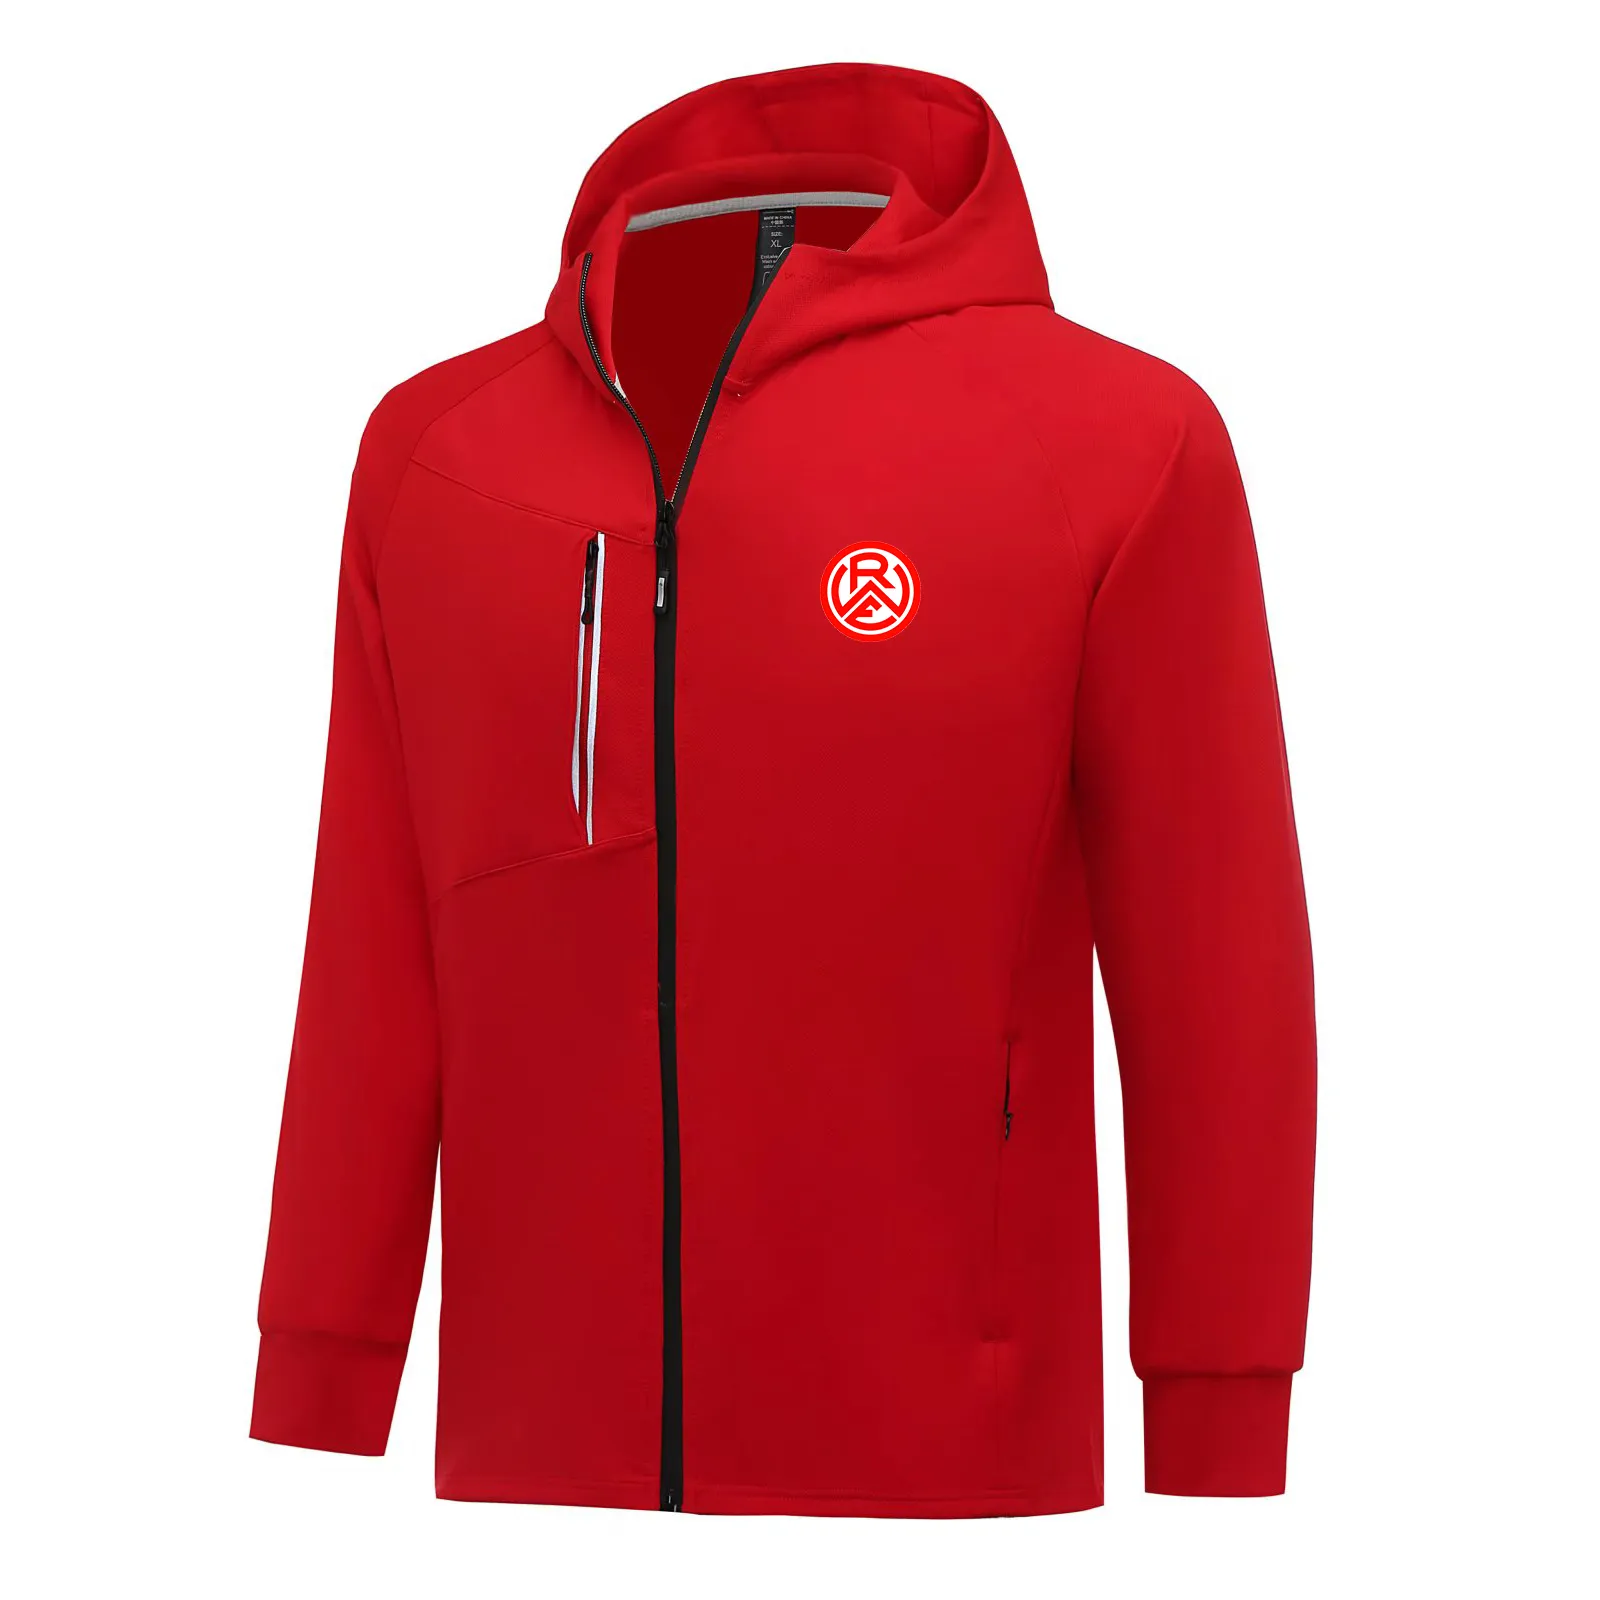 Rot-Weiss Essen 남자 재킷 가을 따뜻한 코트 여가 야외 조깅 후드 스웨트 셔츠 전체 지퍼 긴 소매 캐주얼 스포츠 자켓